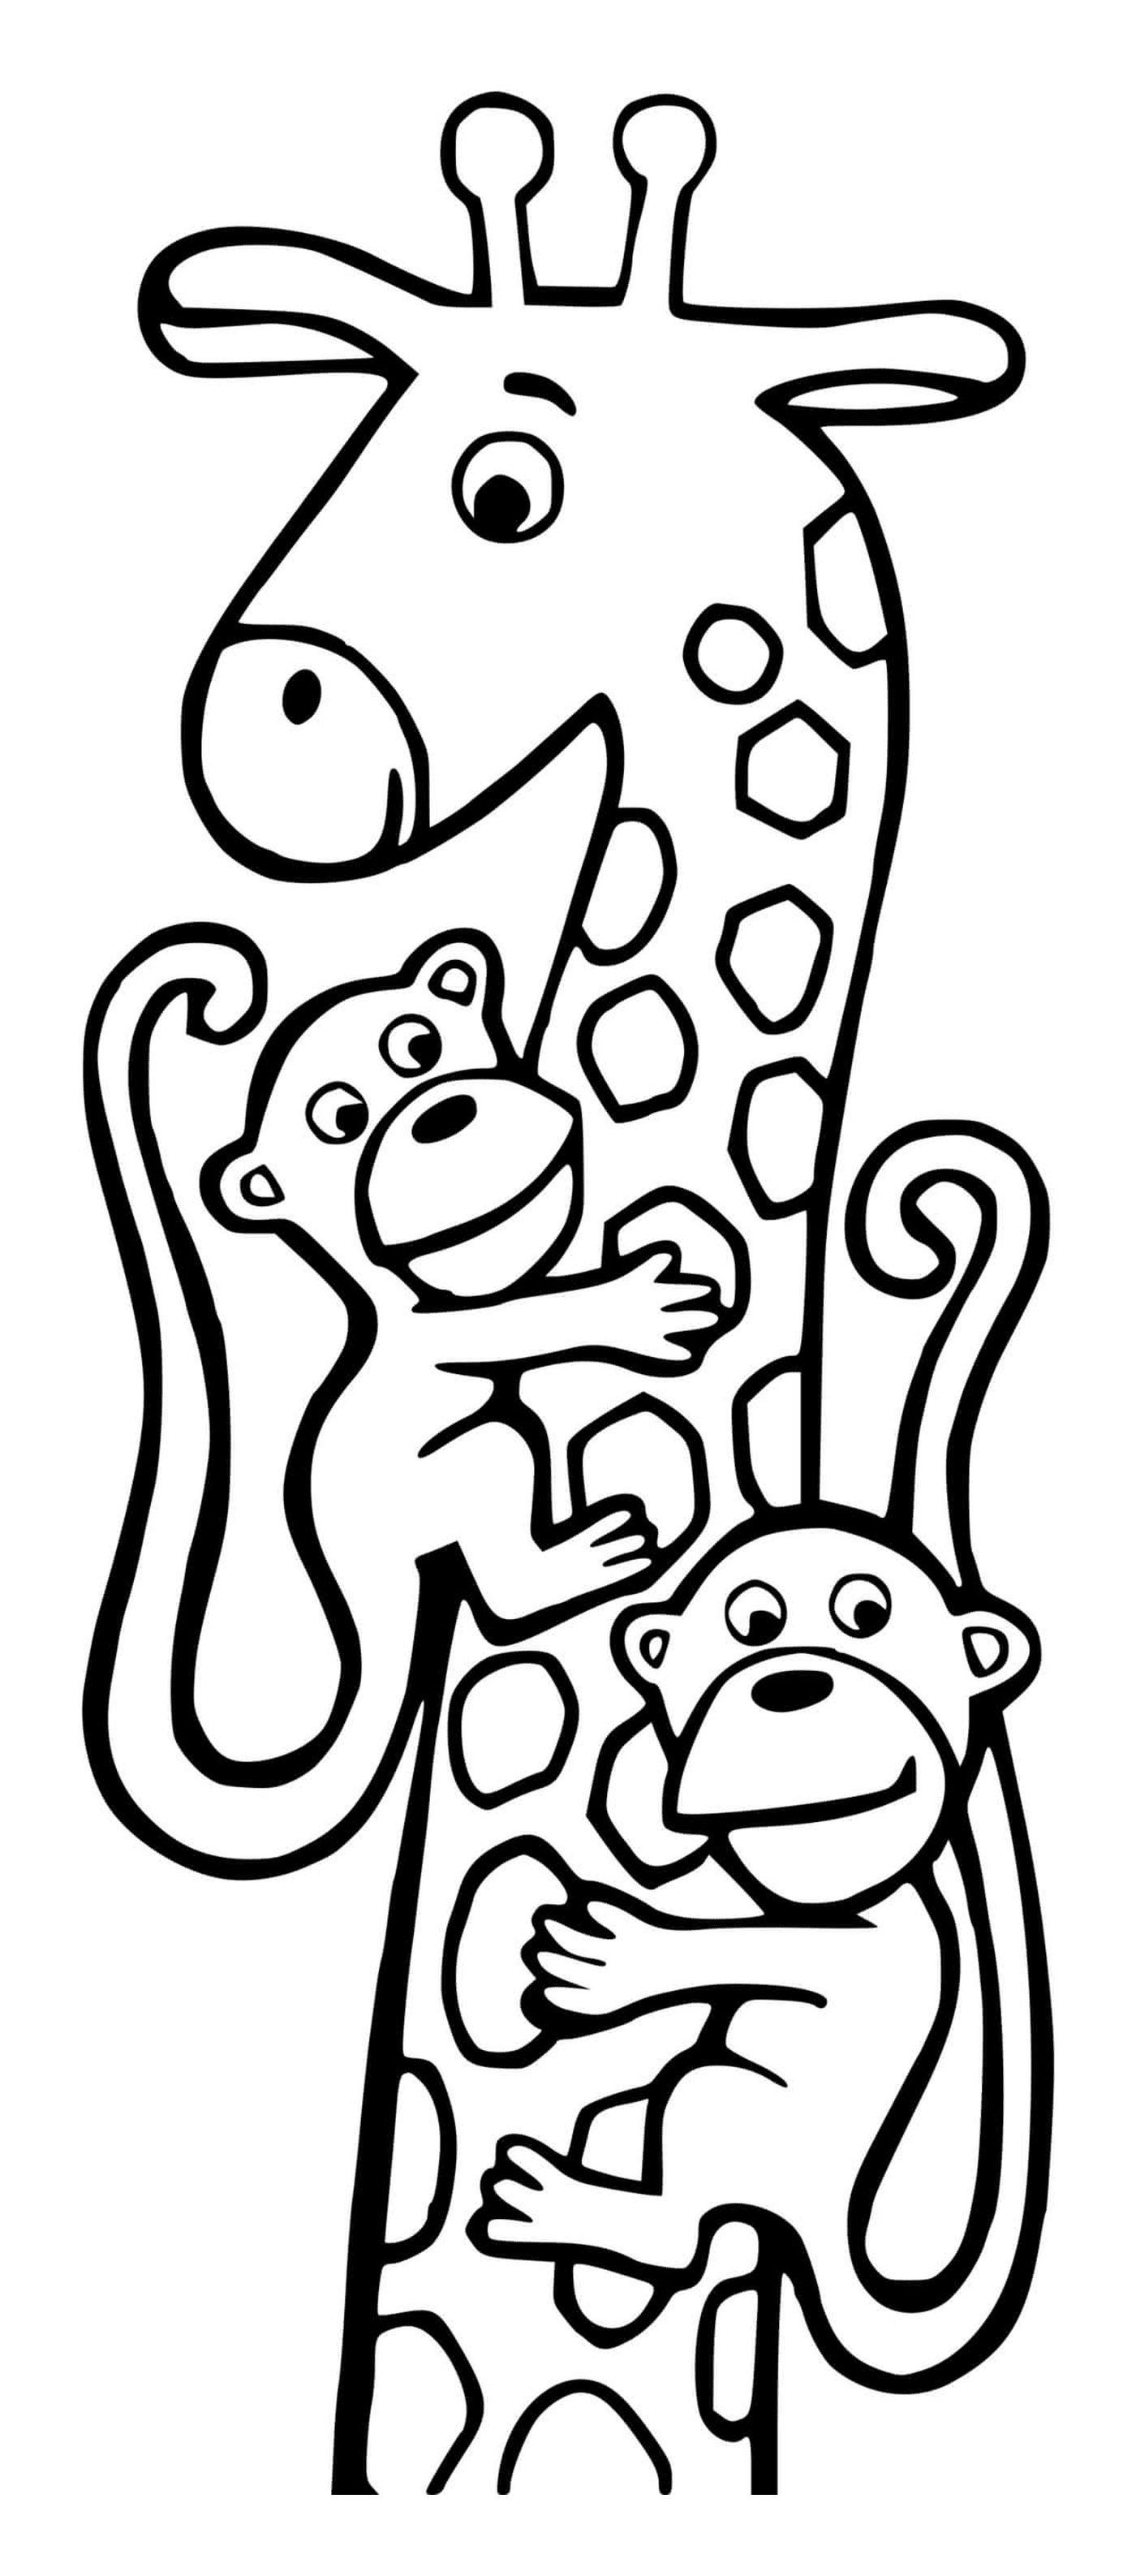  Girafe y dos monos 